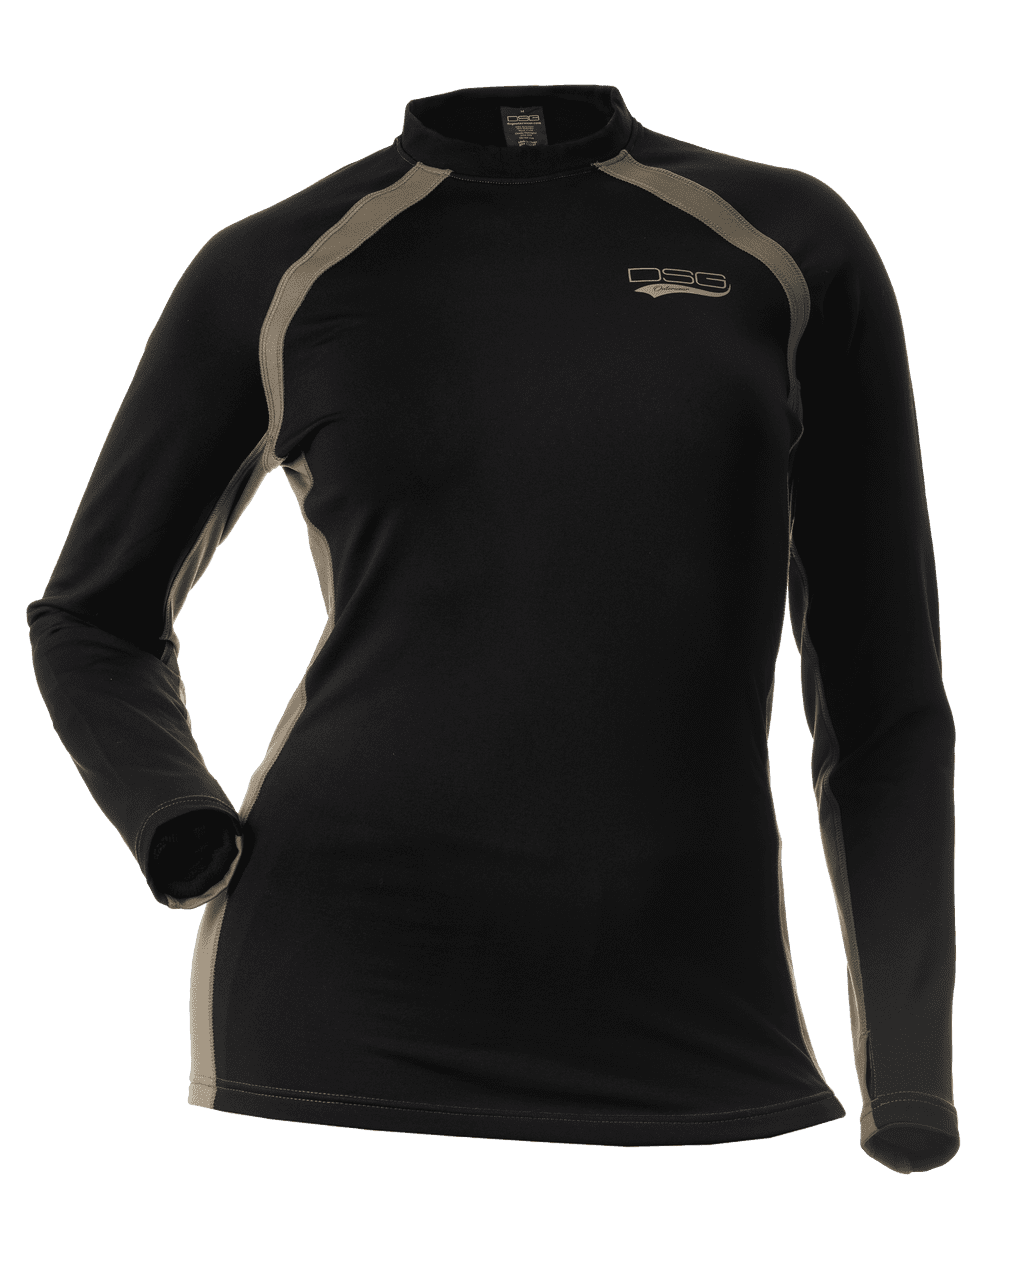 DSG Outerwear D-Tech 1/4 Zip Base Layer Shirt 2.0, Black/Stone, 3XL 